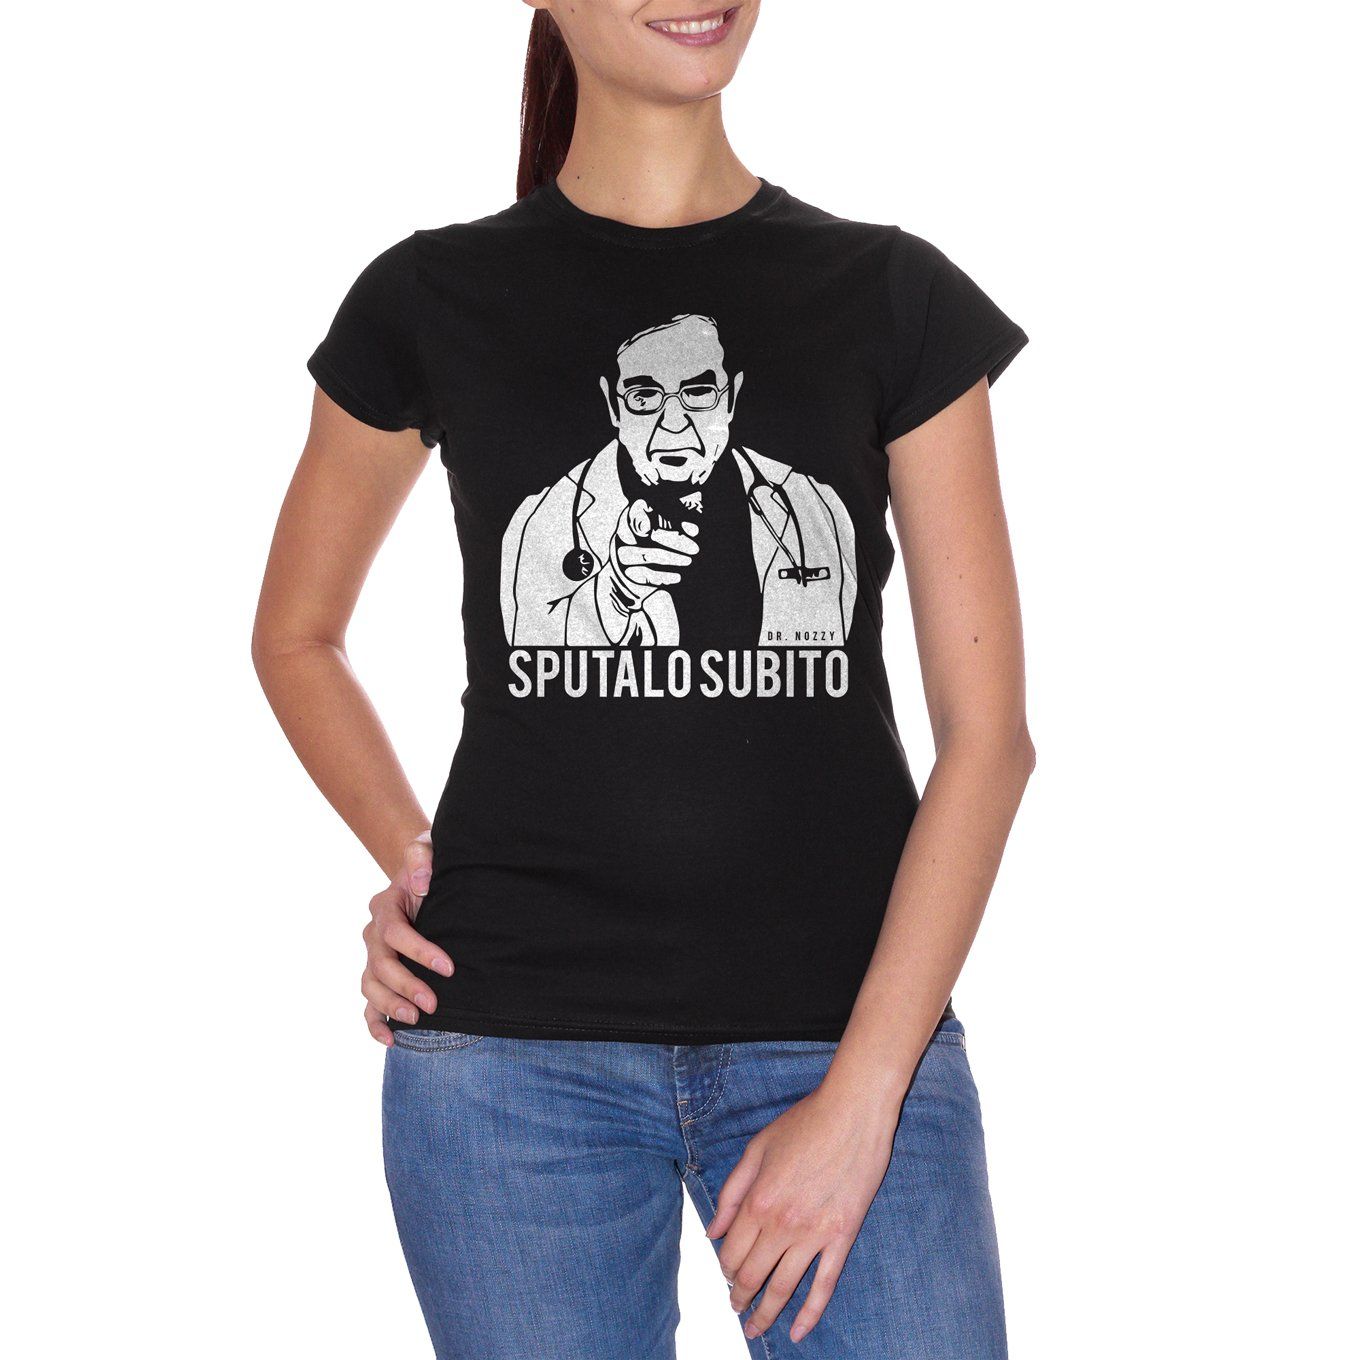 White T-Shirt Dr Nozzy Sputalo Subito -Meme - Choose ur Color Cuc Shop